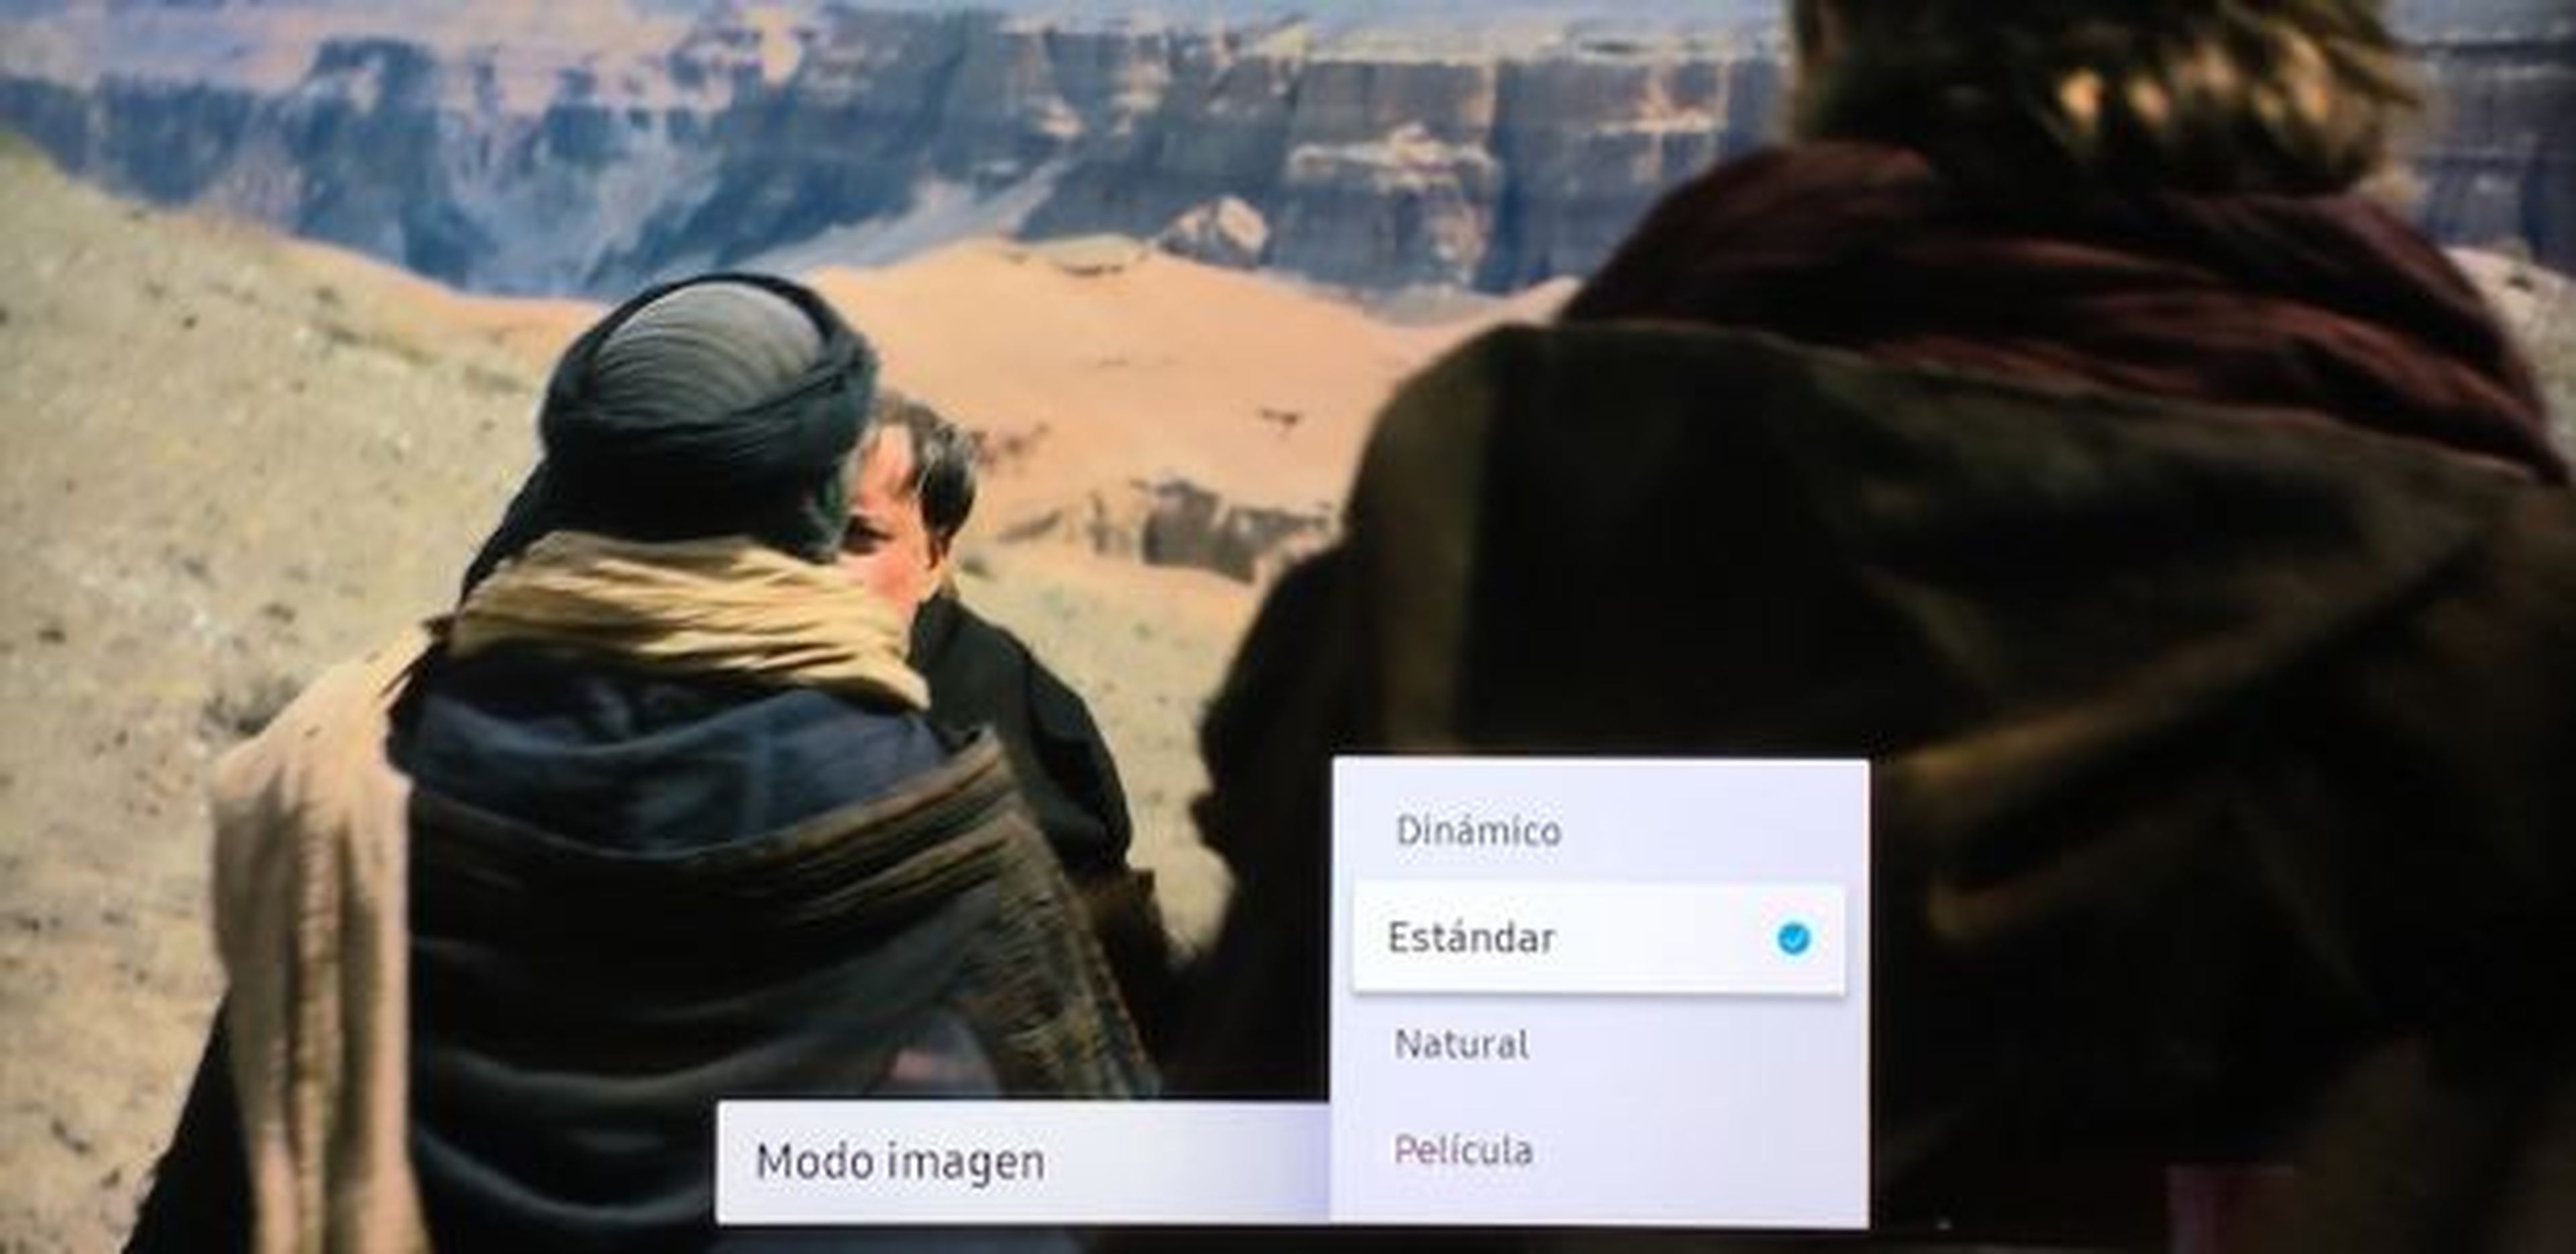 modos de imagen QLED Samsung